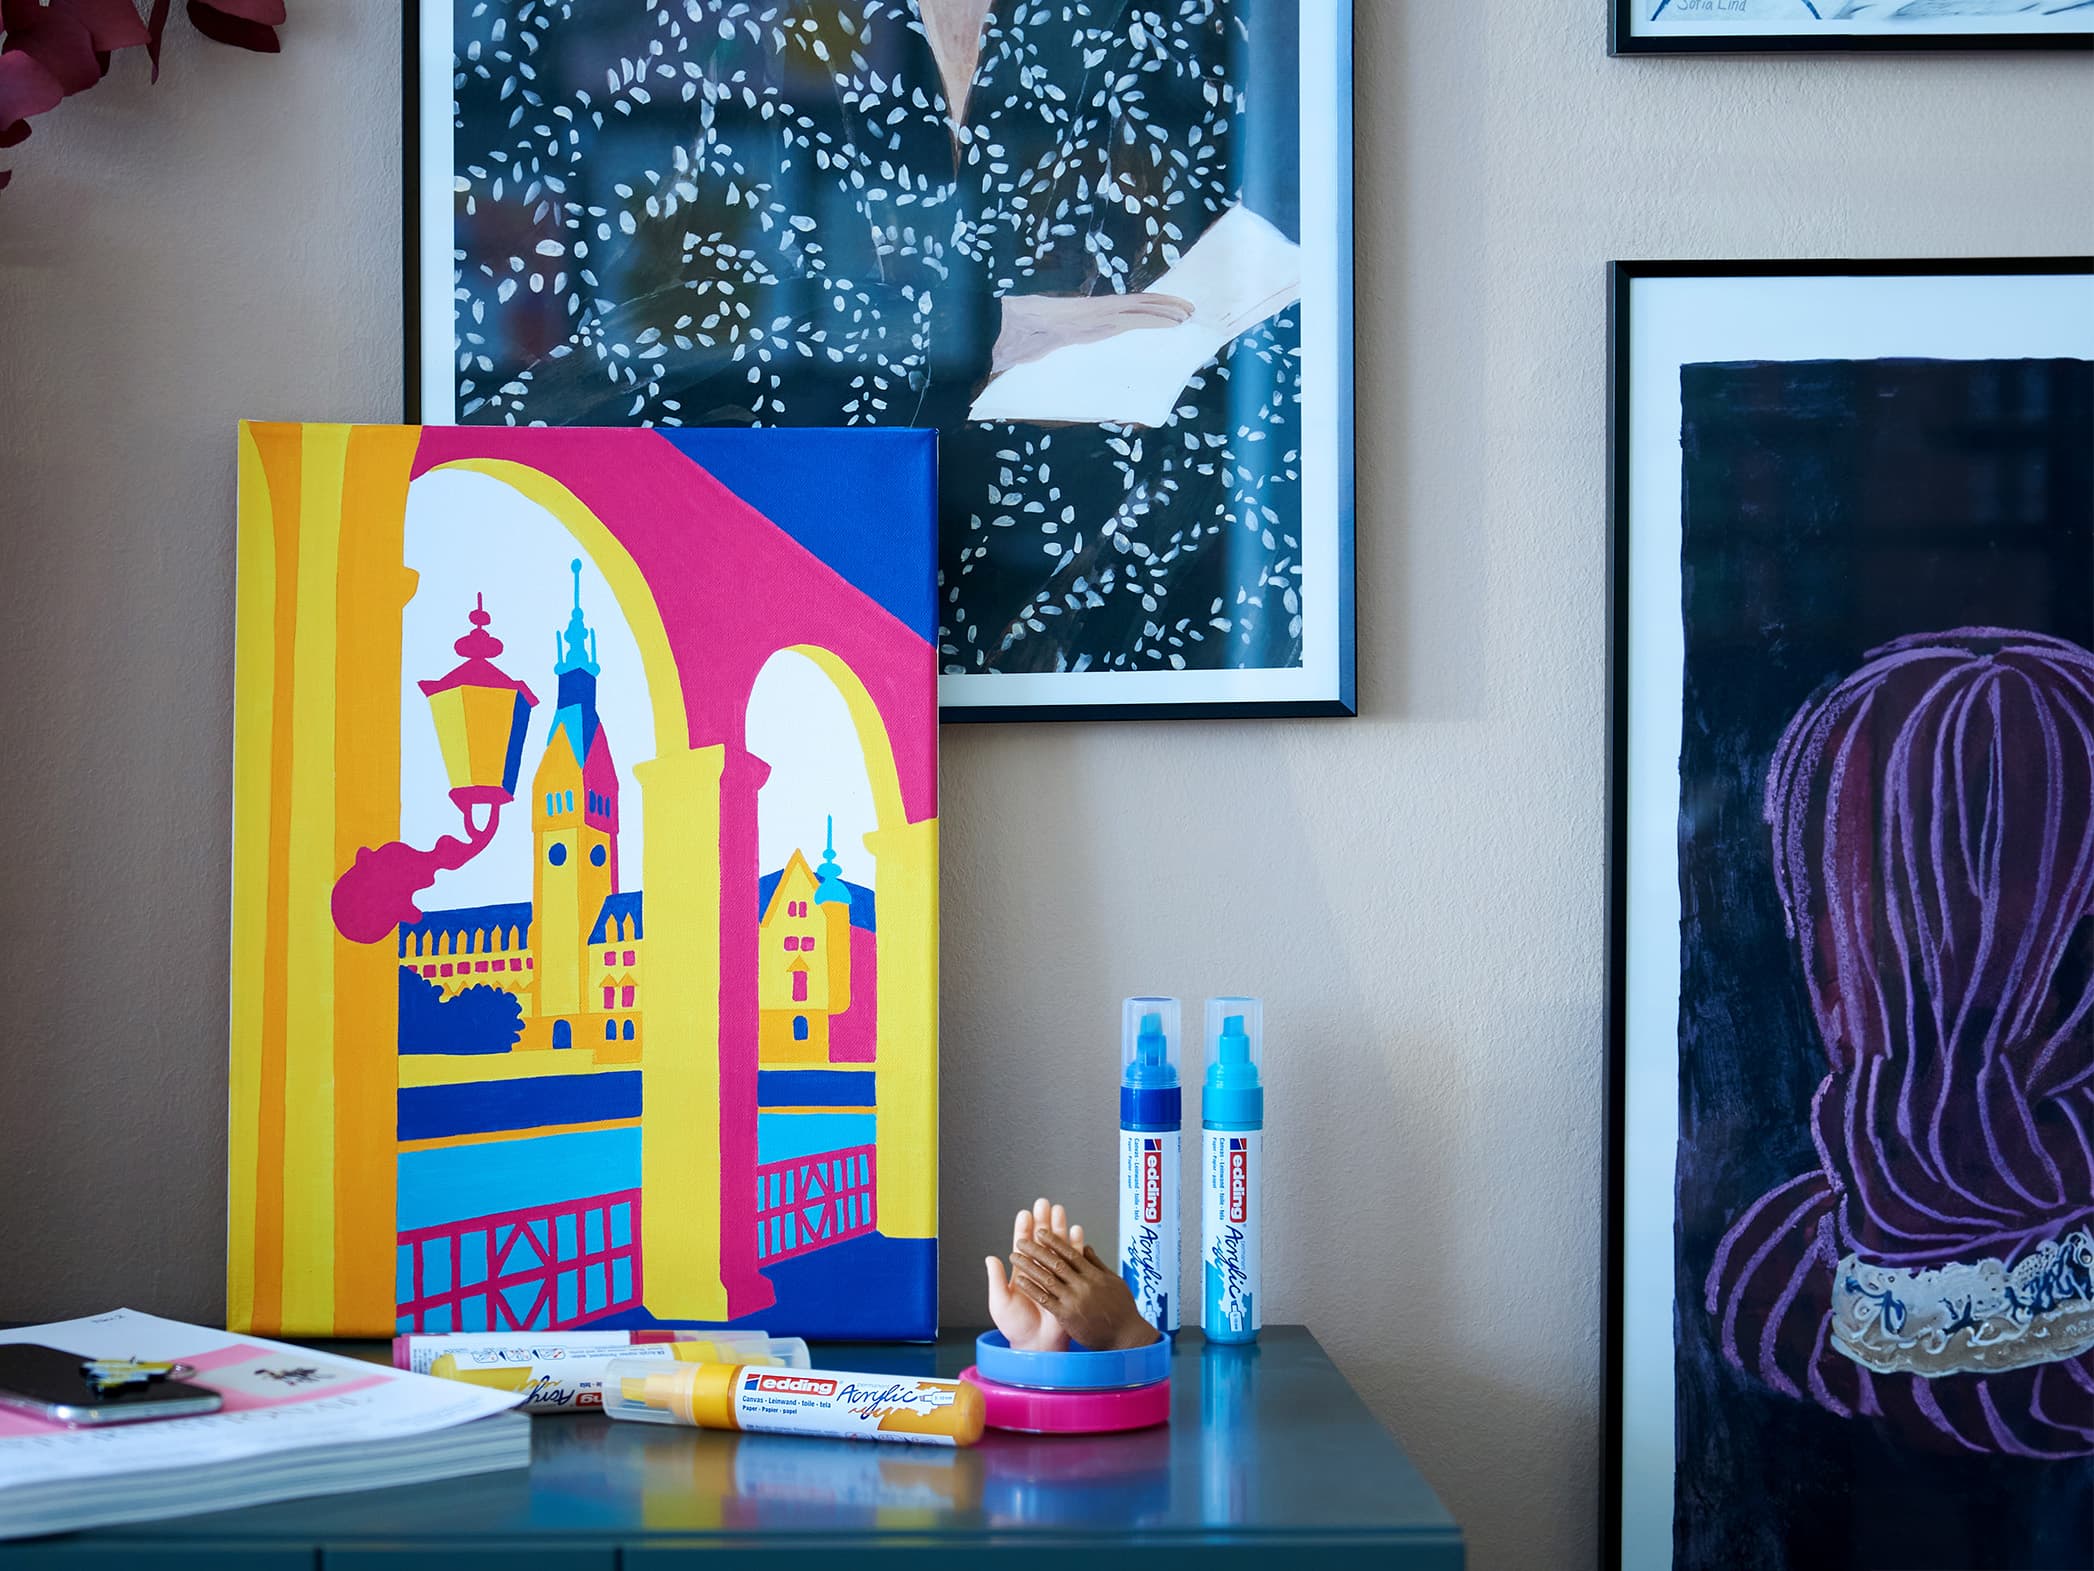 Eine farbenfrohe Ecke mit künstlerischem Flair: An der Wand lehnt ein lebendiges, abstraktes Gemälde architektonischer Merkmale in kräftigen Gelb-, Blau- und Rosatönen, flankiert von einer Sammlung gerahmter Kunstwerke. Ein kleiner edding 5000 Acrylmarker breit.